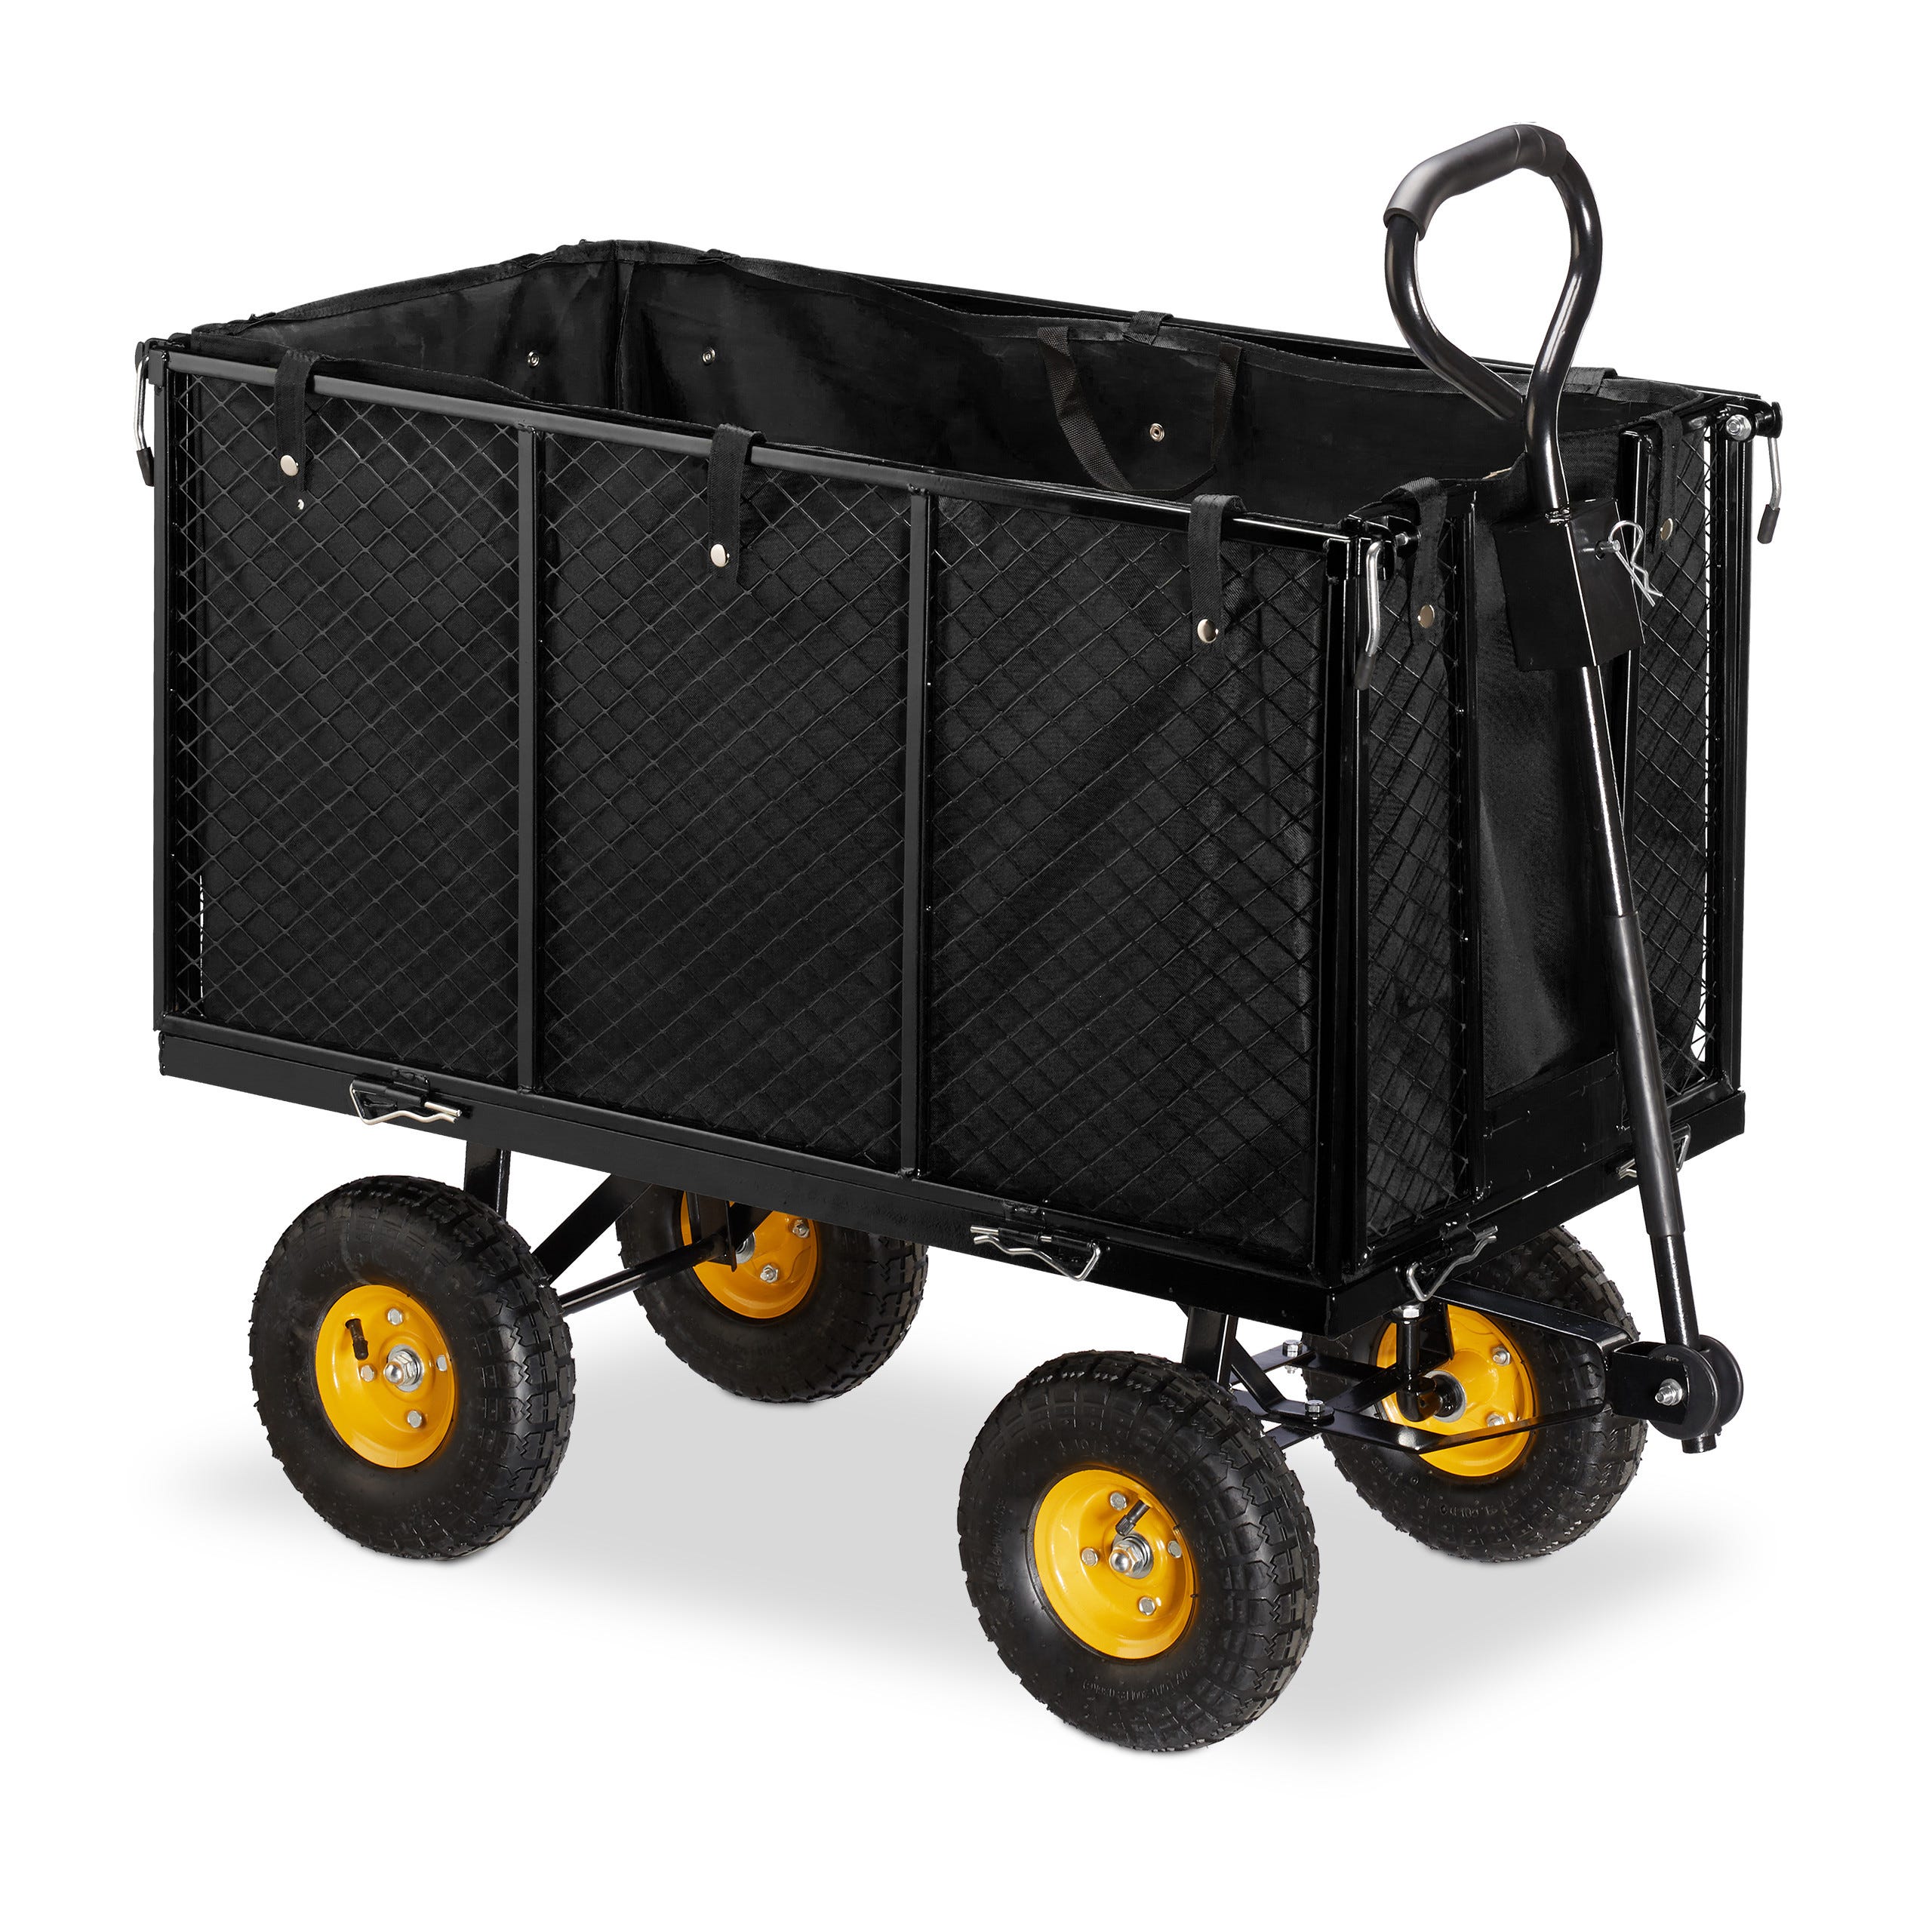 Relaxdays Chariot de transport, côtés rabattables, poignées pour porter le  contenant, jardin, capacité de 500 kg, noir